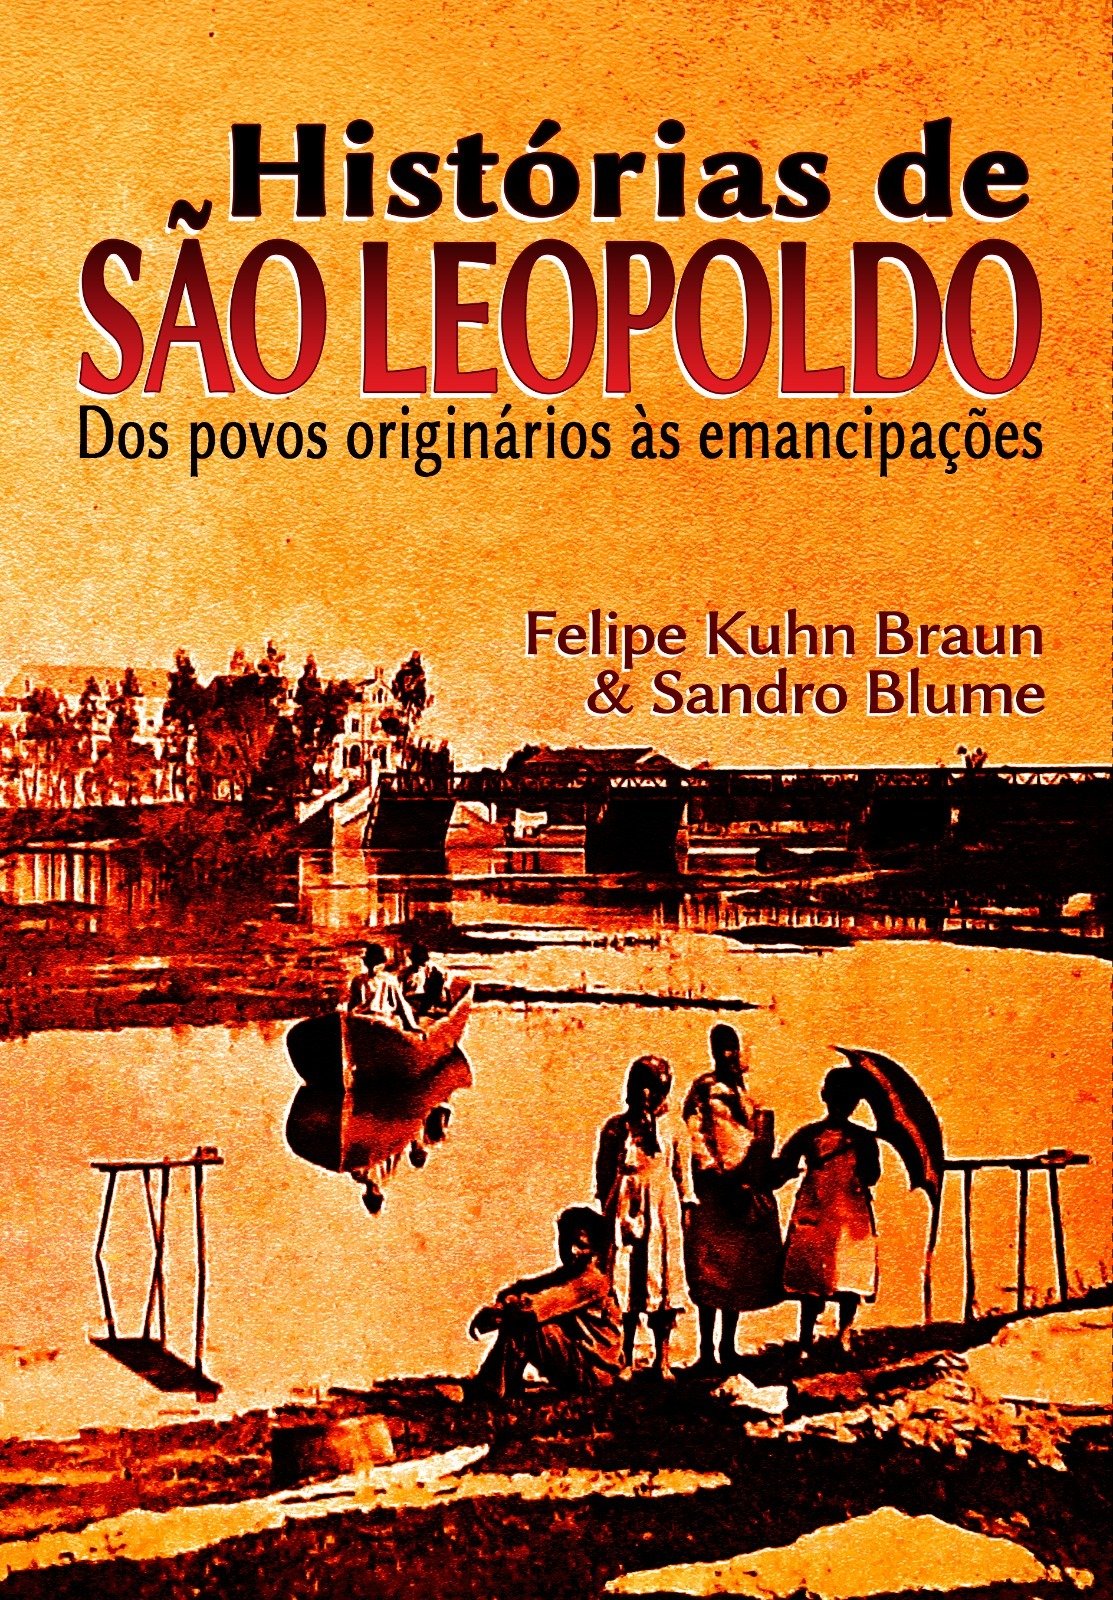 Livro com "Histórias de São Leopoldo" será lançado neste sábado no Museu Histórico